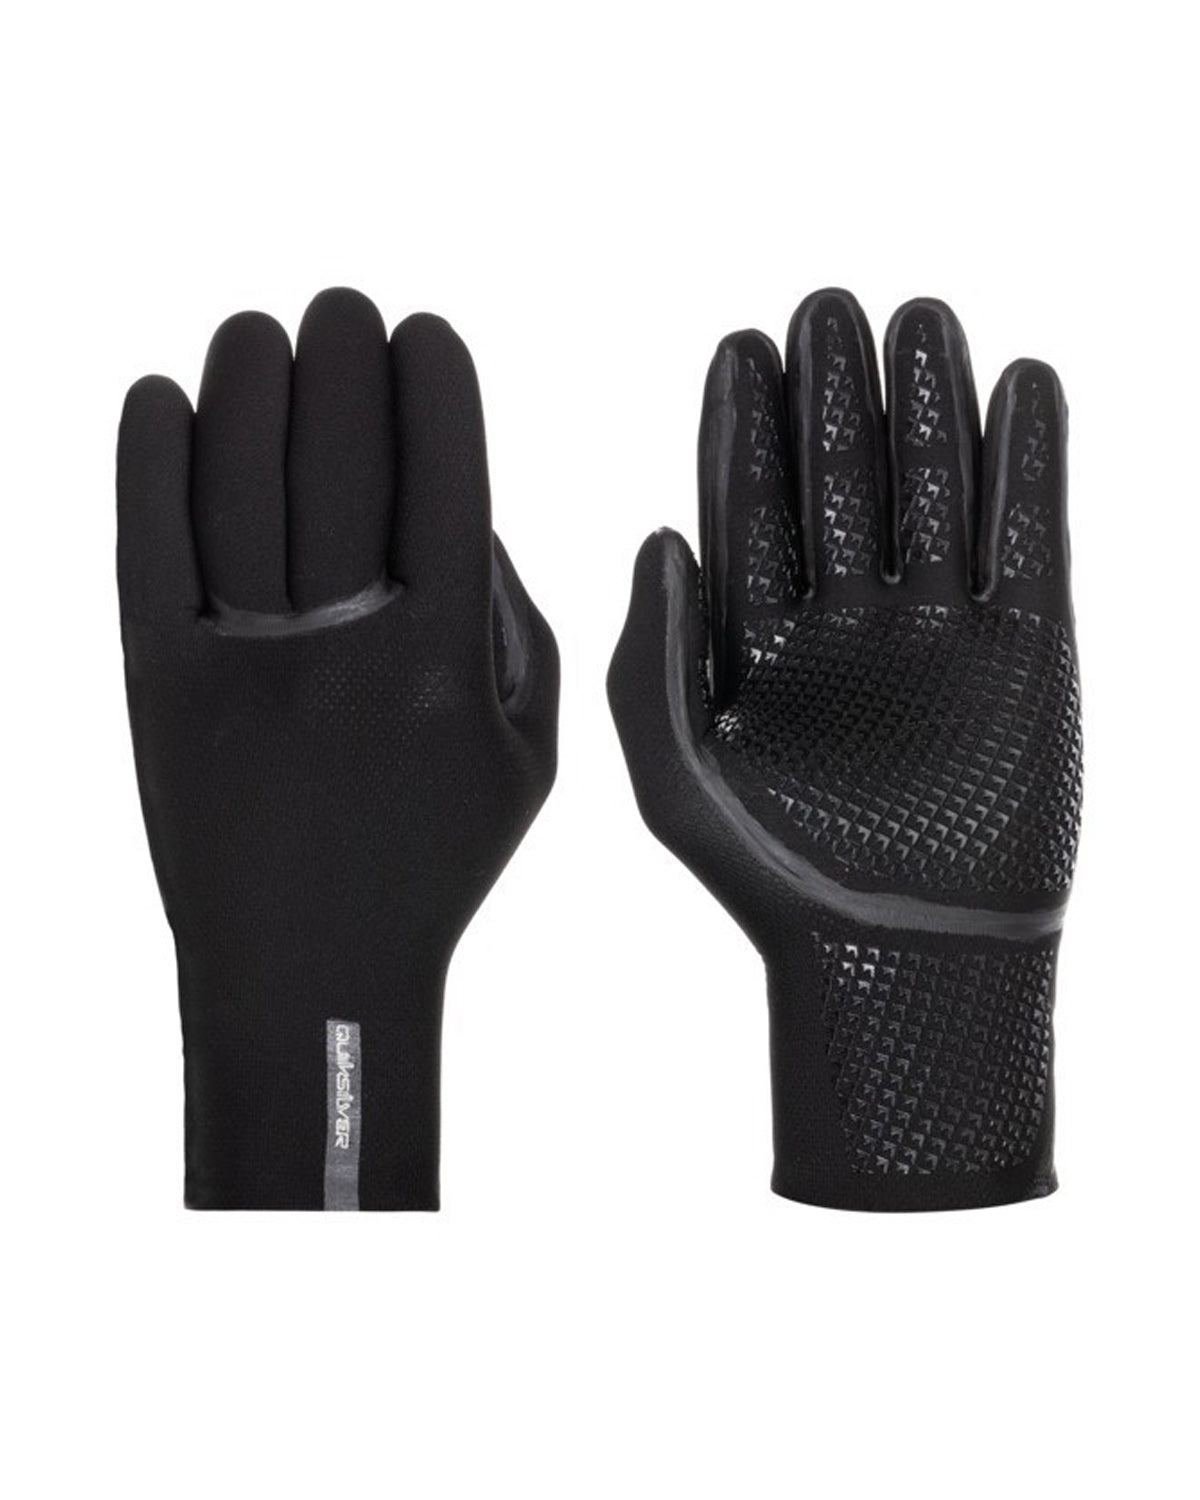 3mm Quiksilver MARATHON SESSIONS Wetsuit Gloves